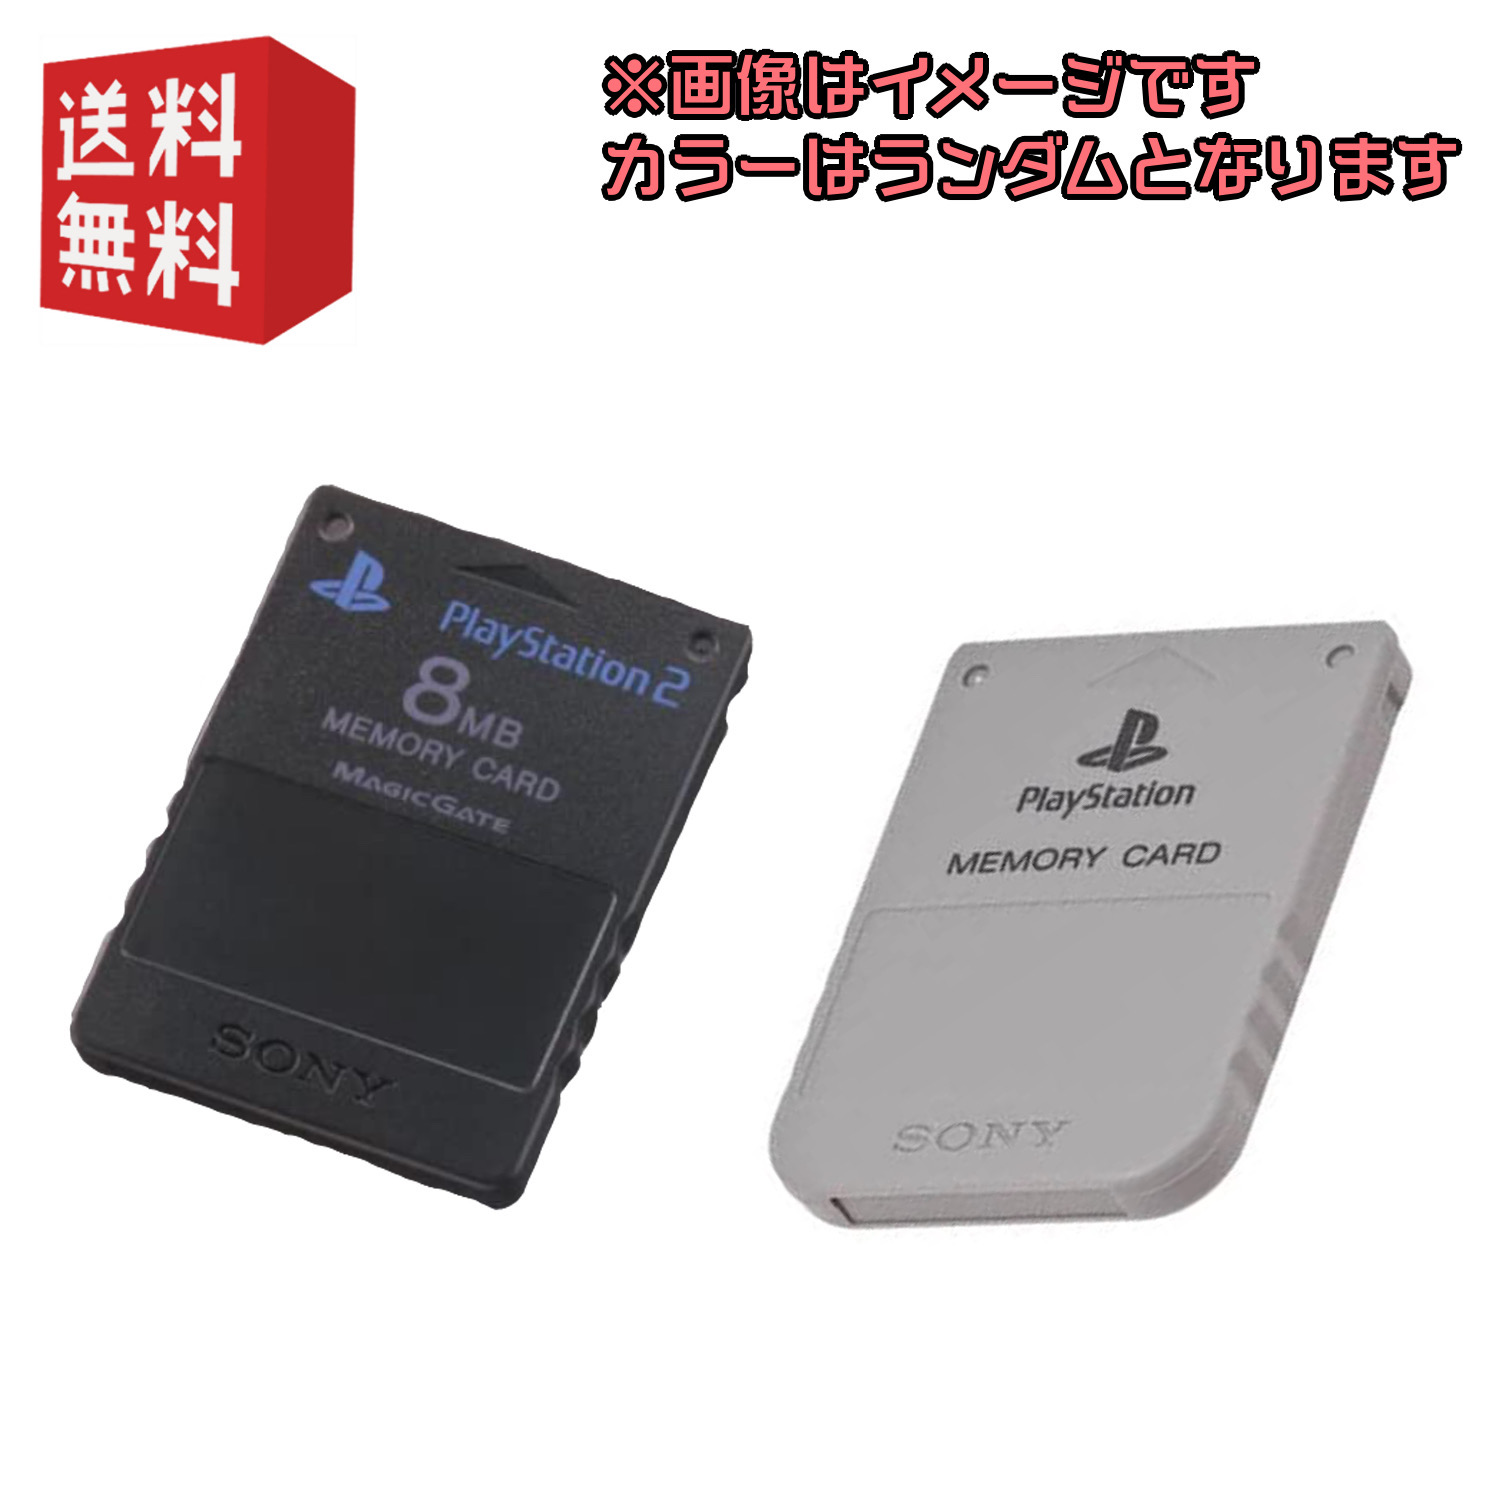 暖色系 PS2 メモリーカード付 通販